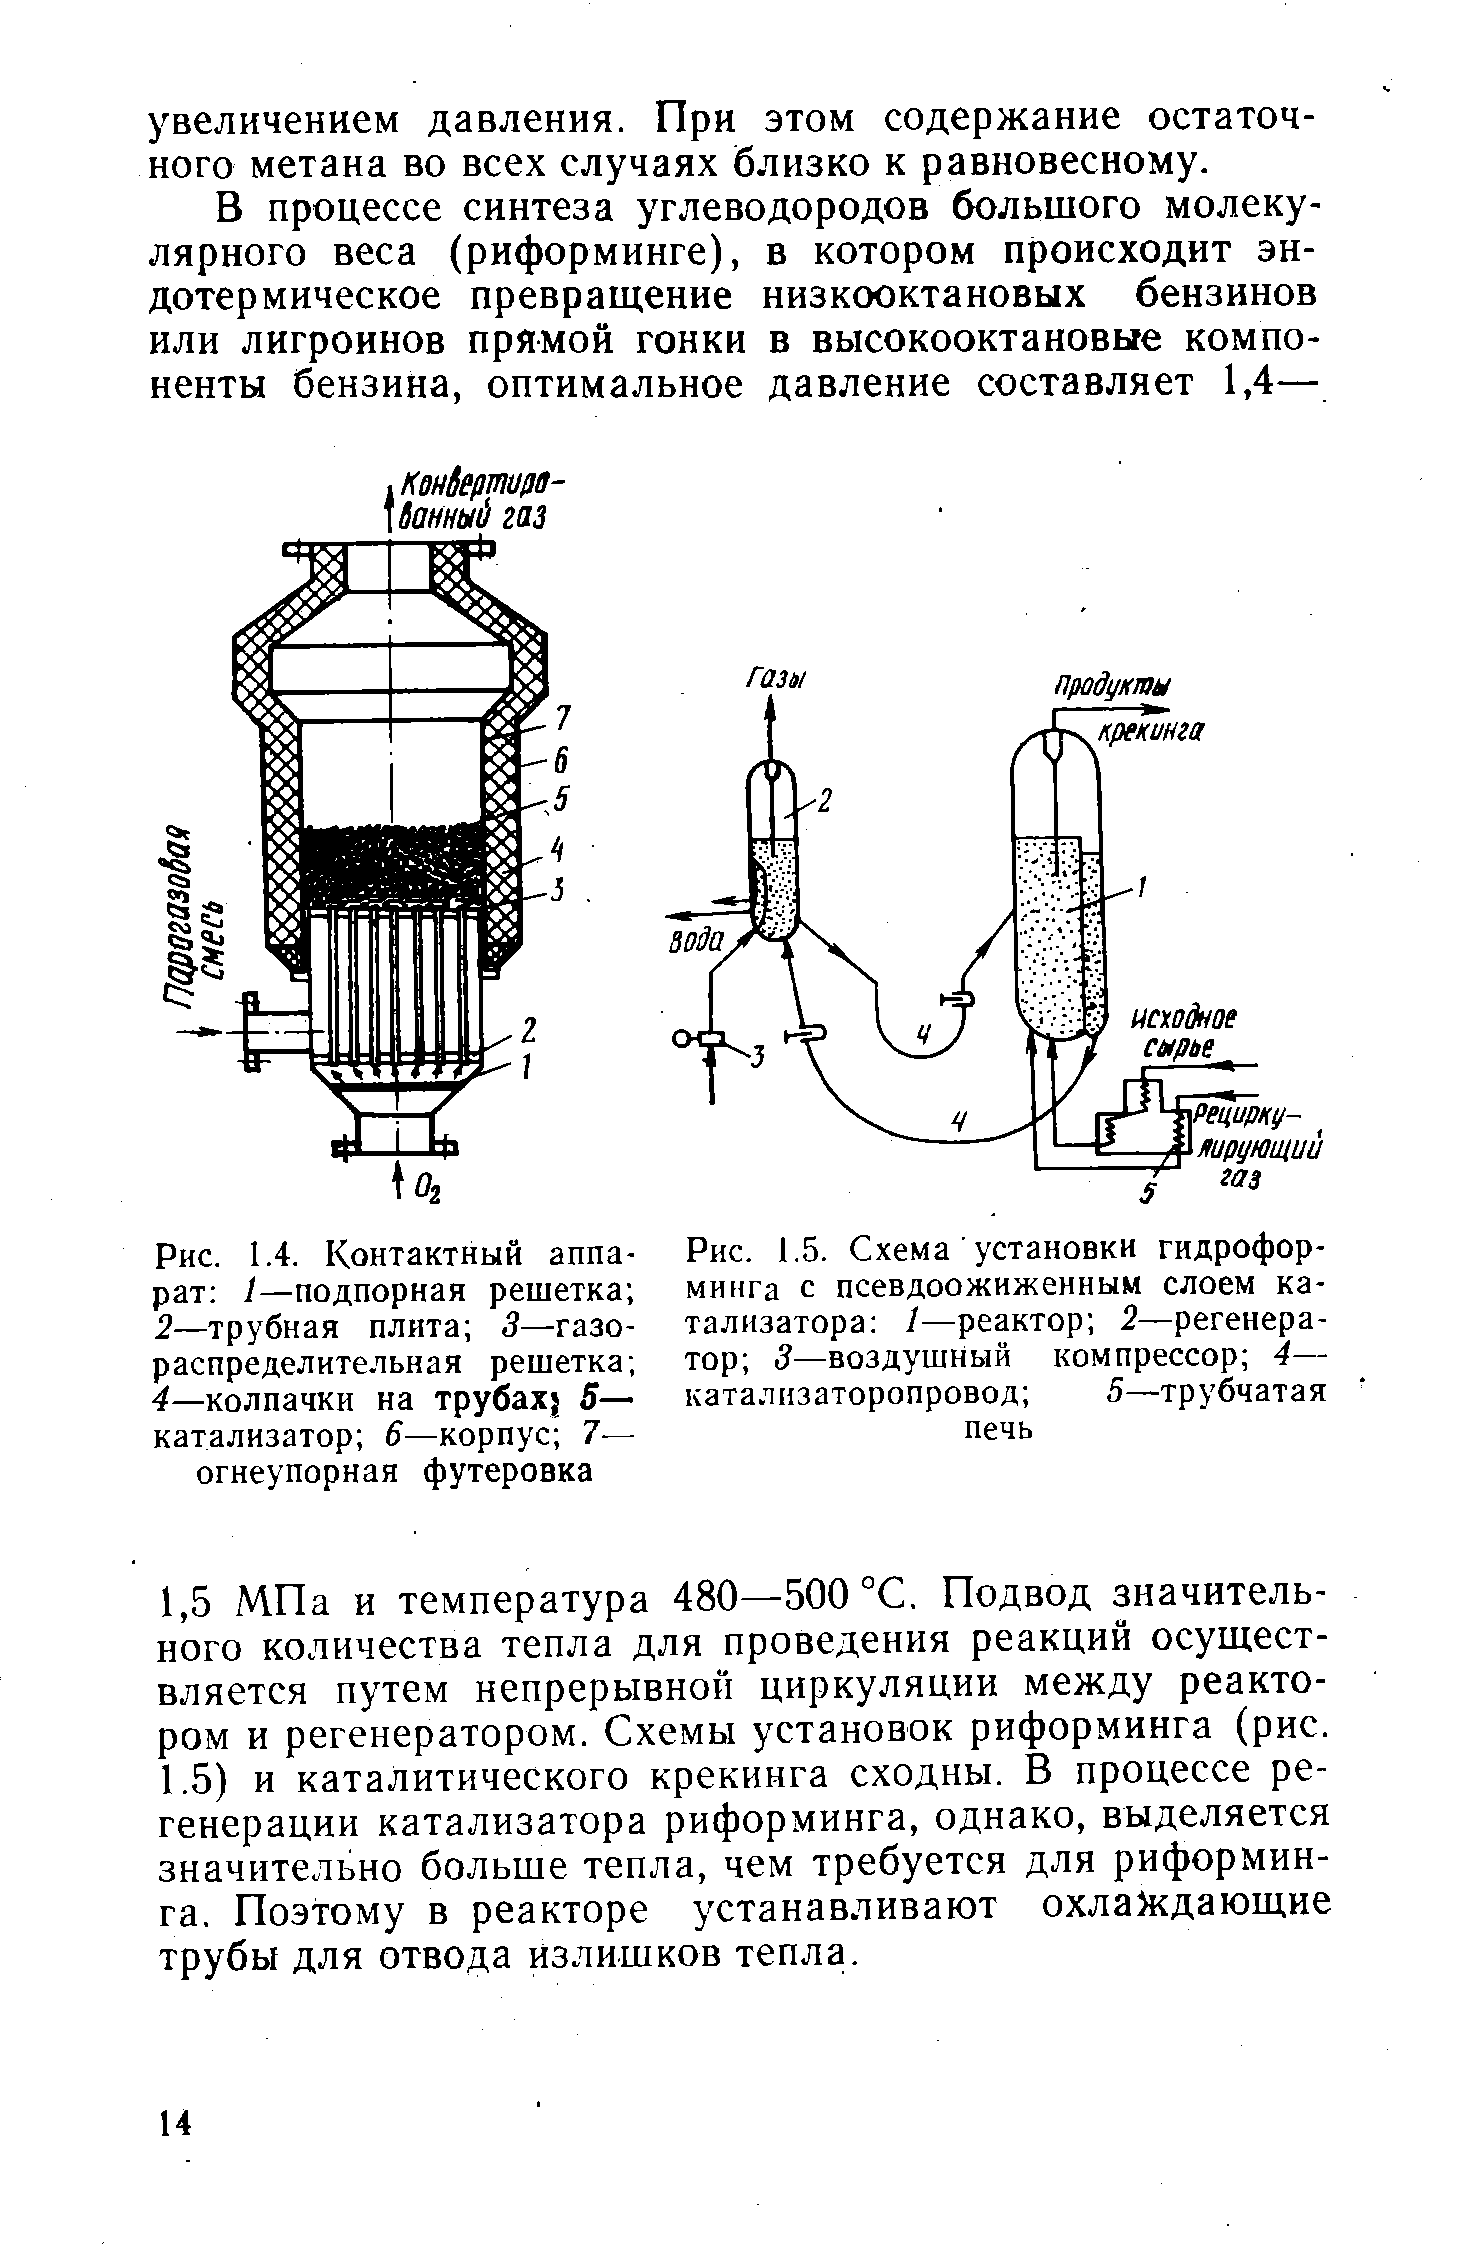 Рис. 1.5. Схема установки гидроформинга с <a href="/info/5512">псевдоожиженным слоем</a> катализатора /—реактор 2—регенератор 3—воздушный компрессор 4— каталнзаторопровод 5—трубчатая печь
